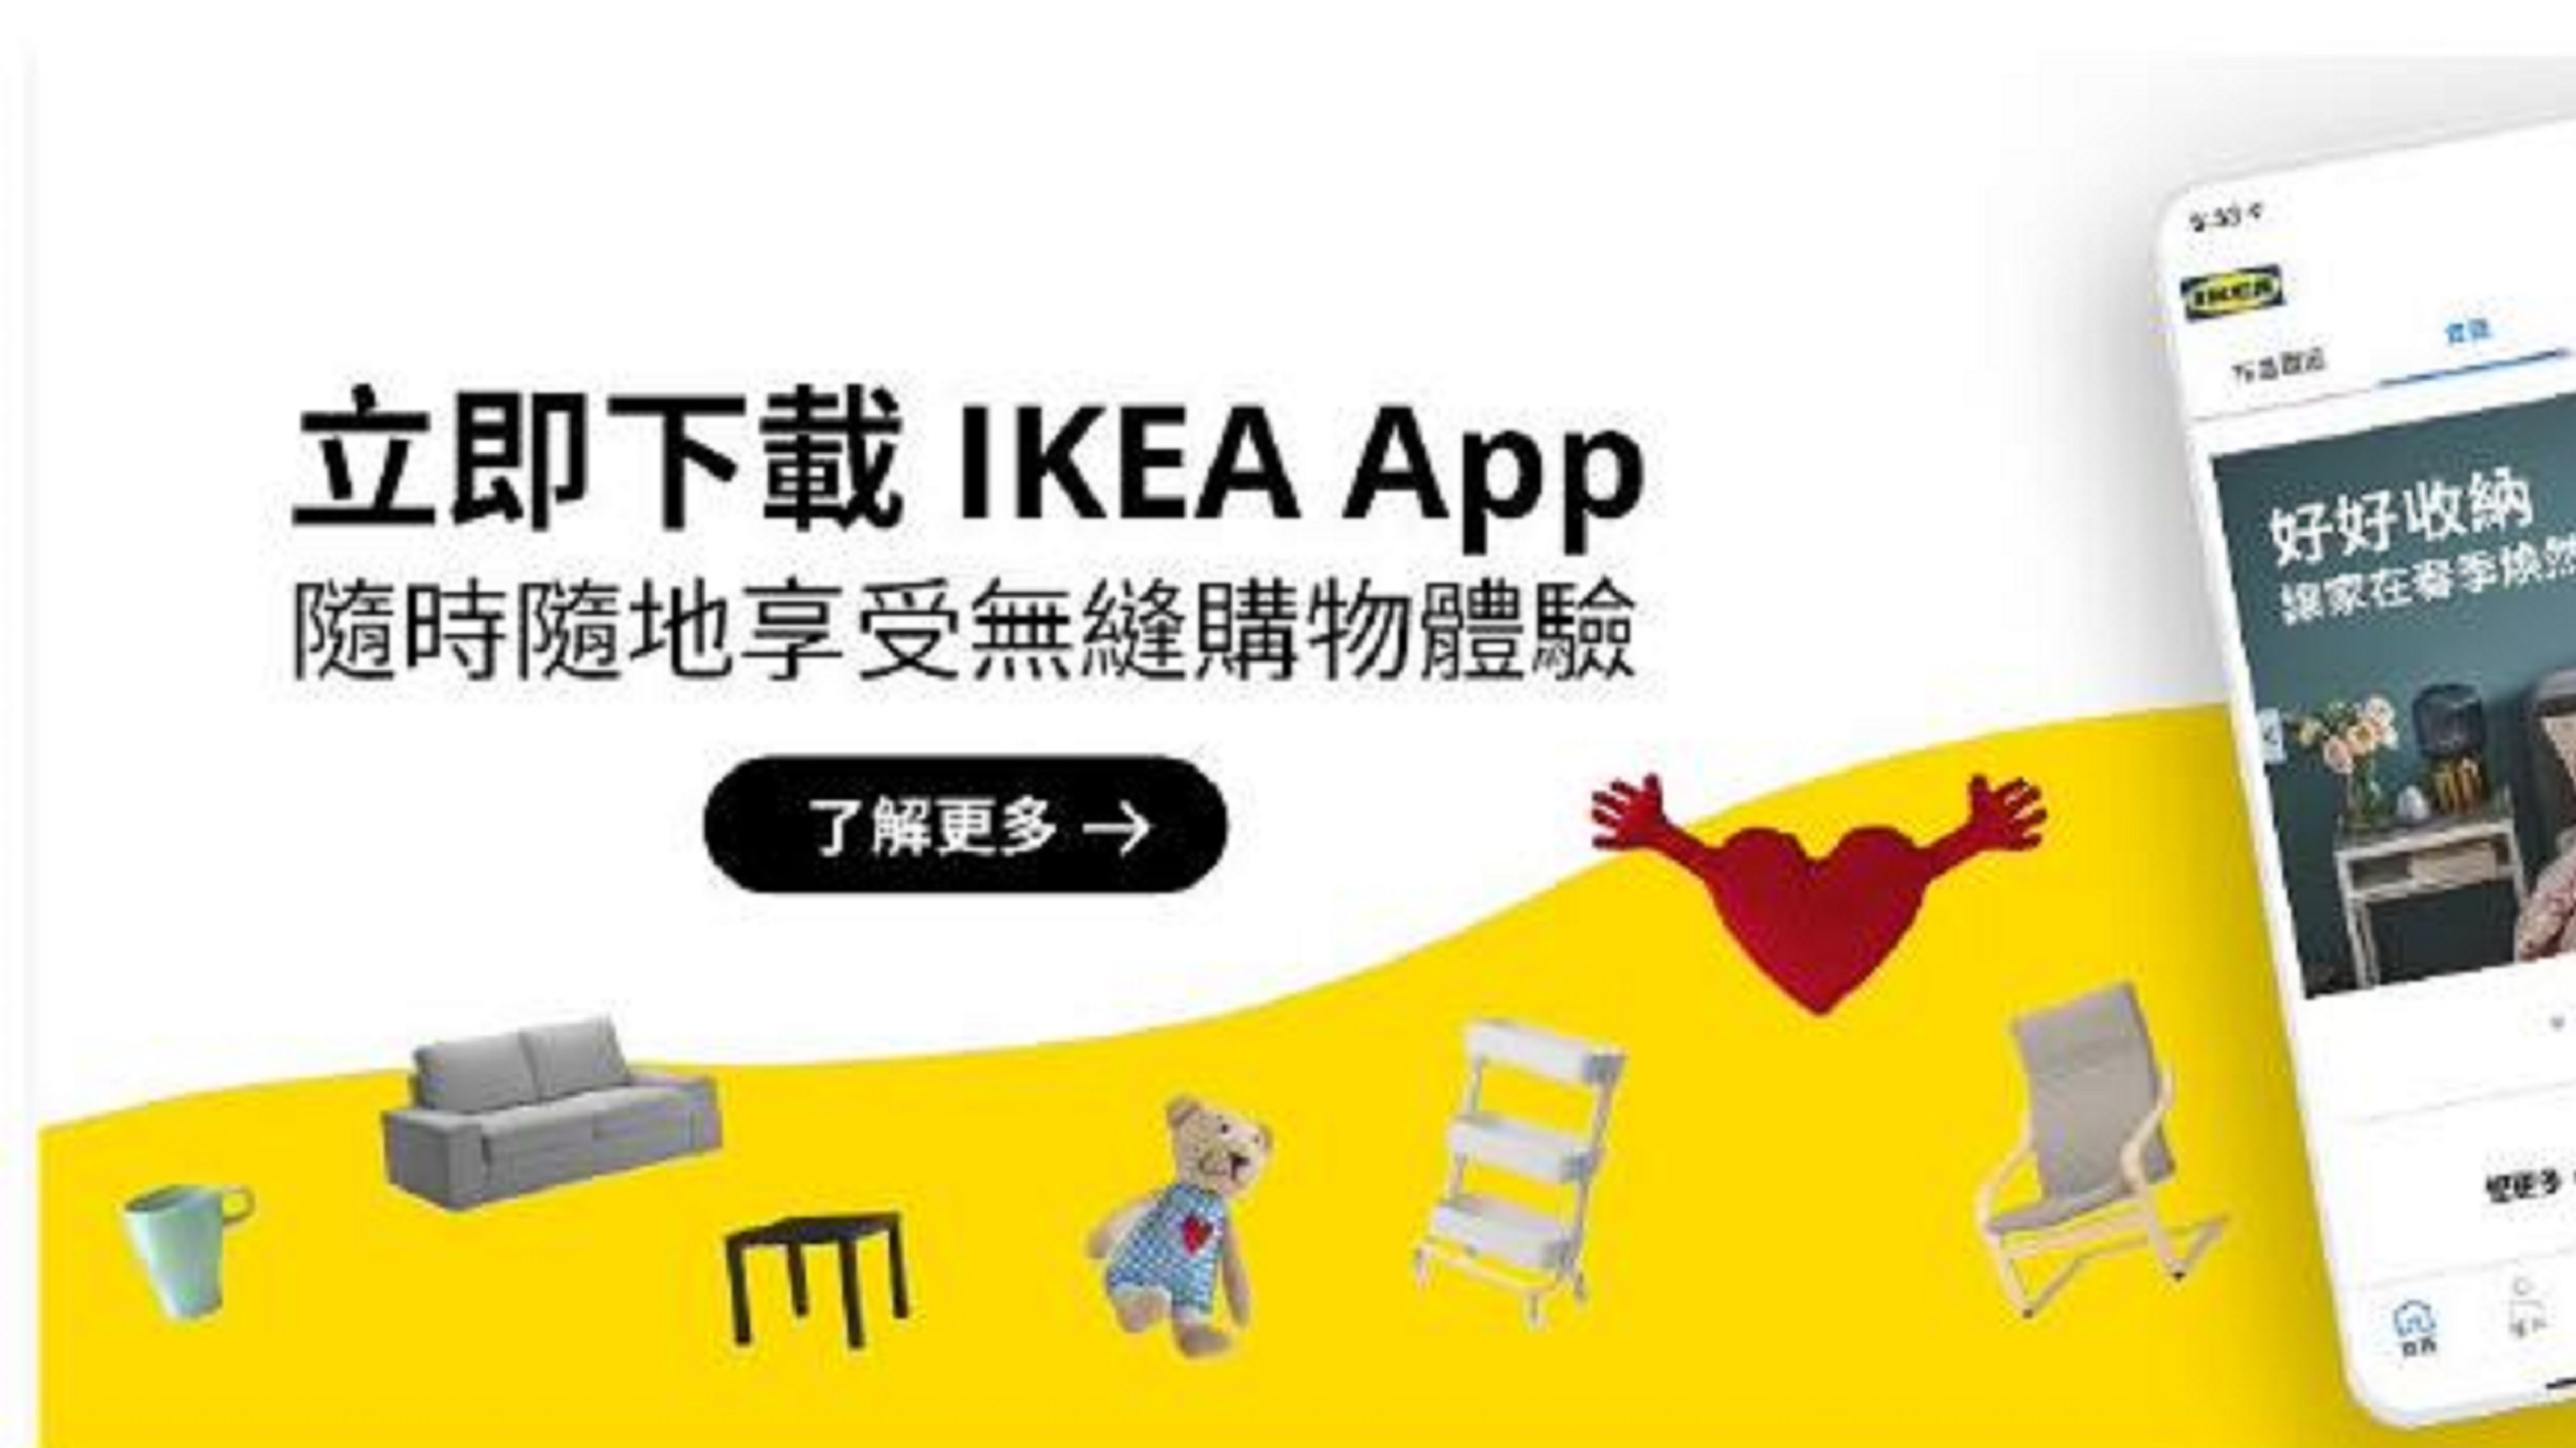 【家居】IKEA手機App登場 貼心功能彈指完成購物體驗